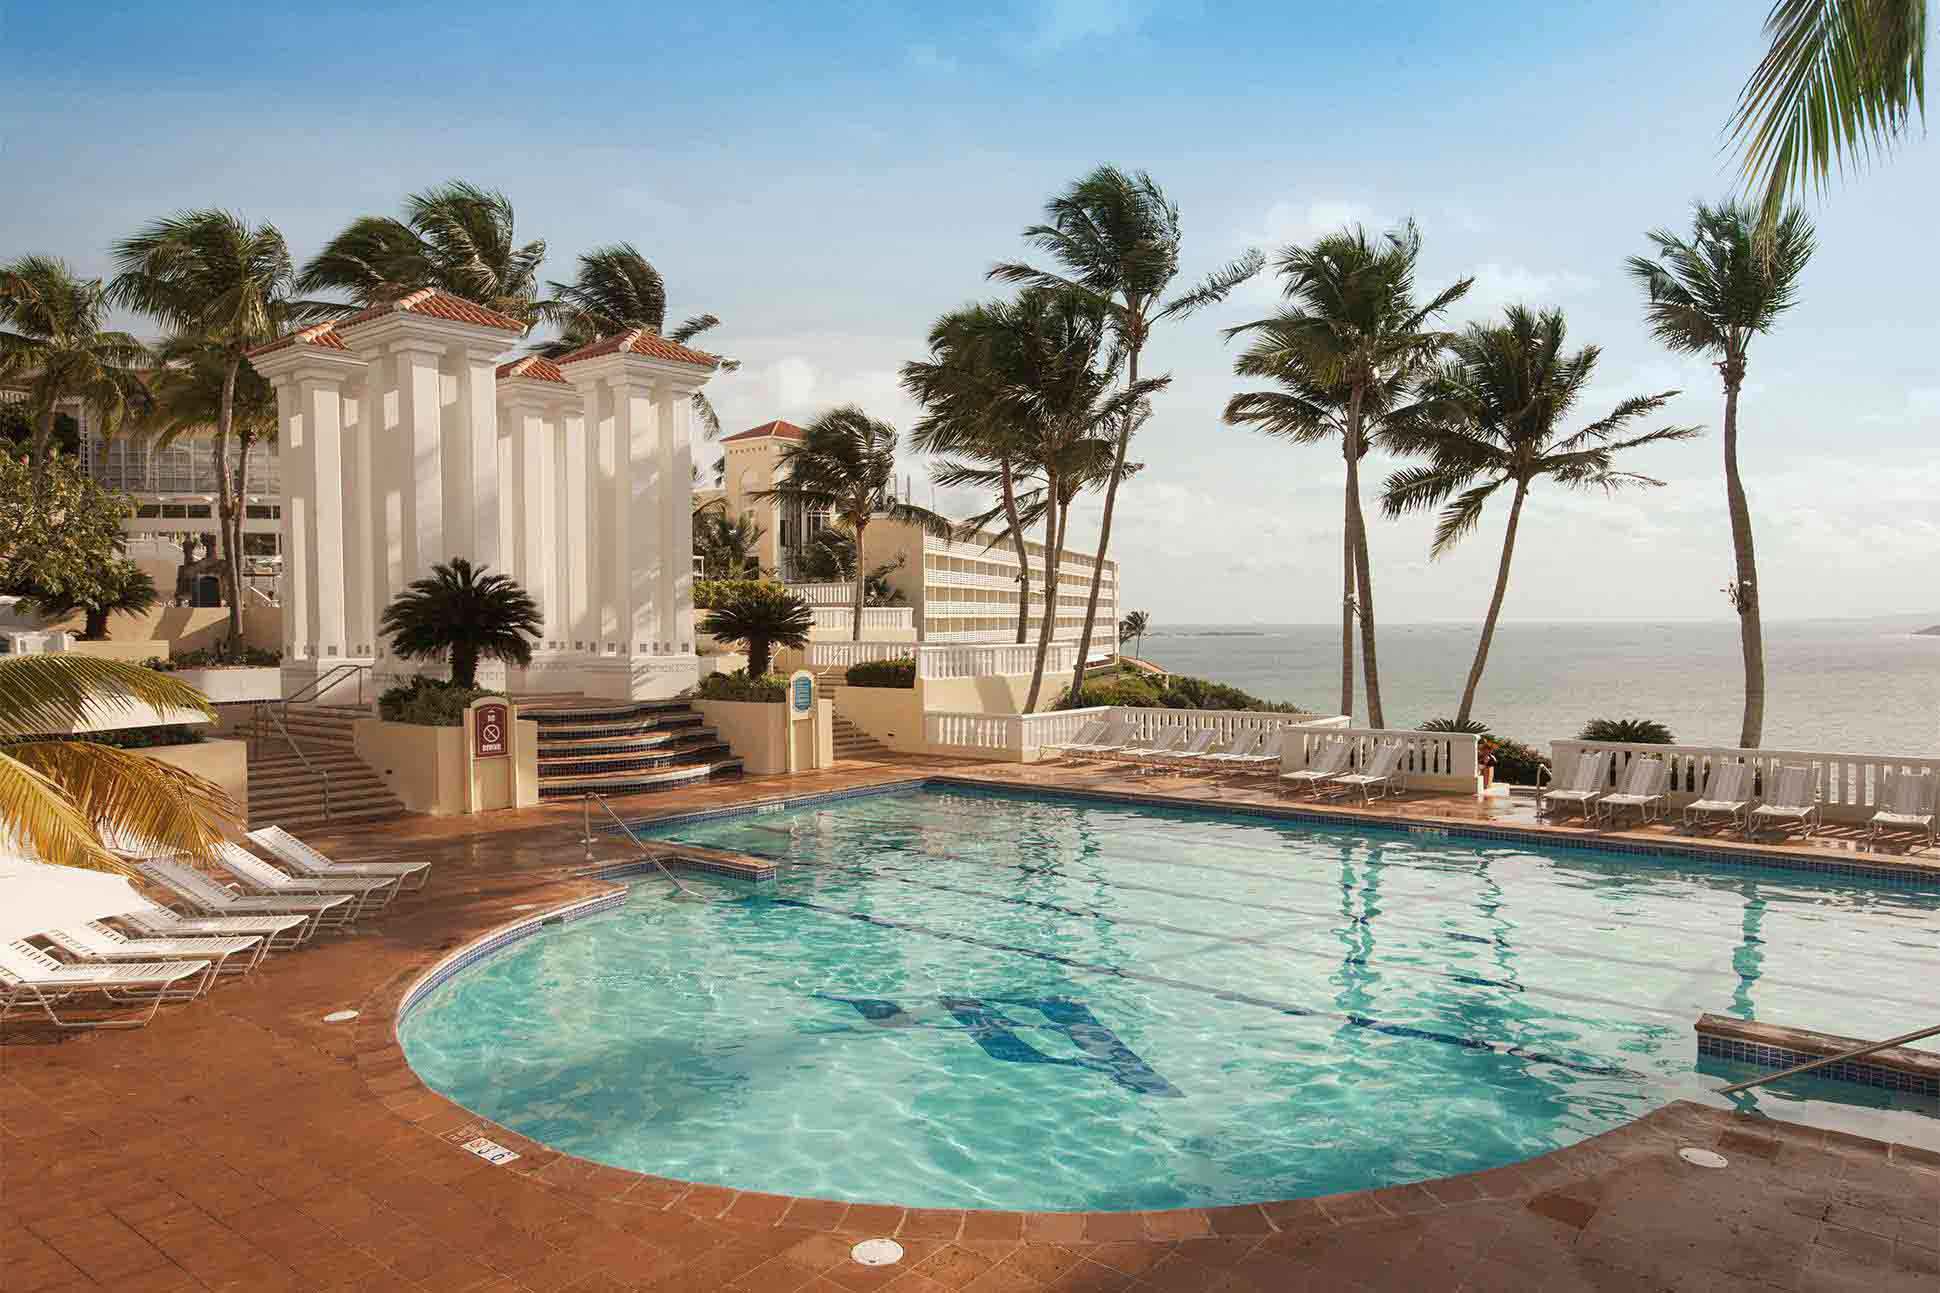 El Conquistador Resort, Fajardo, Puerto Rico, USA